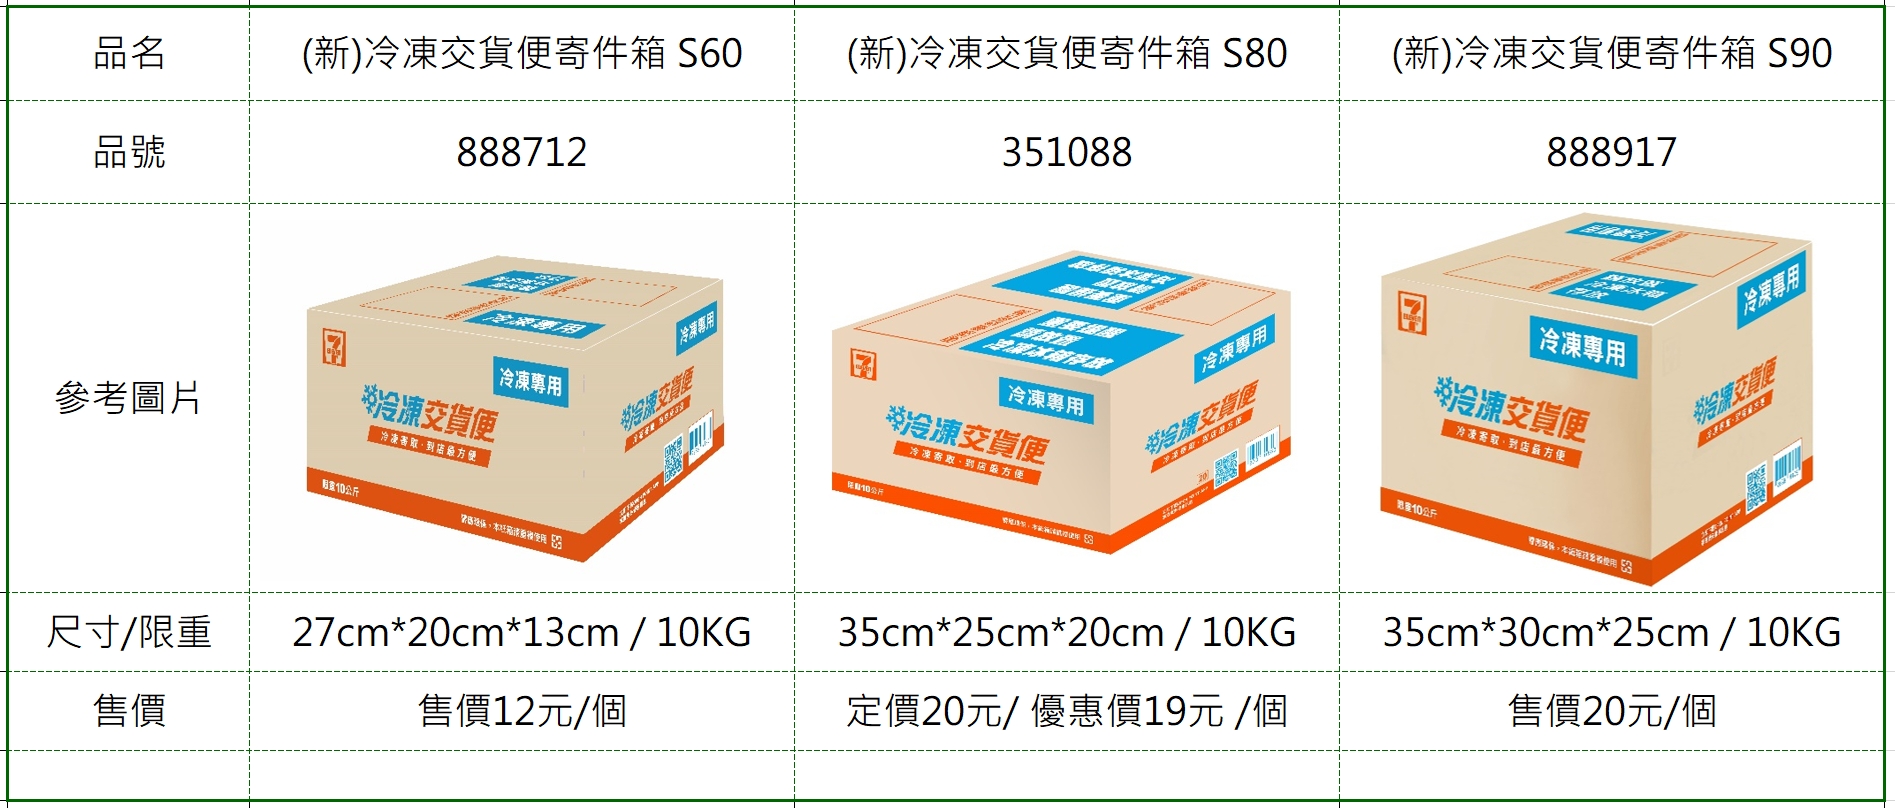 冷凍交貨便包材規格說明